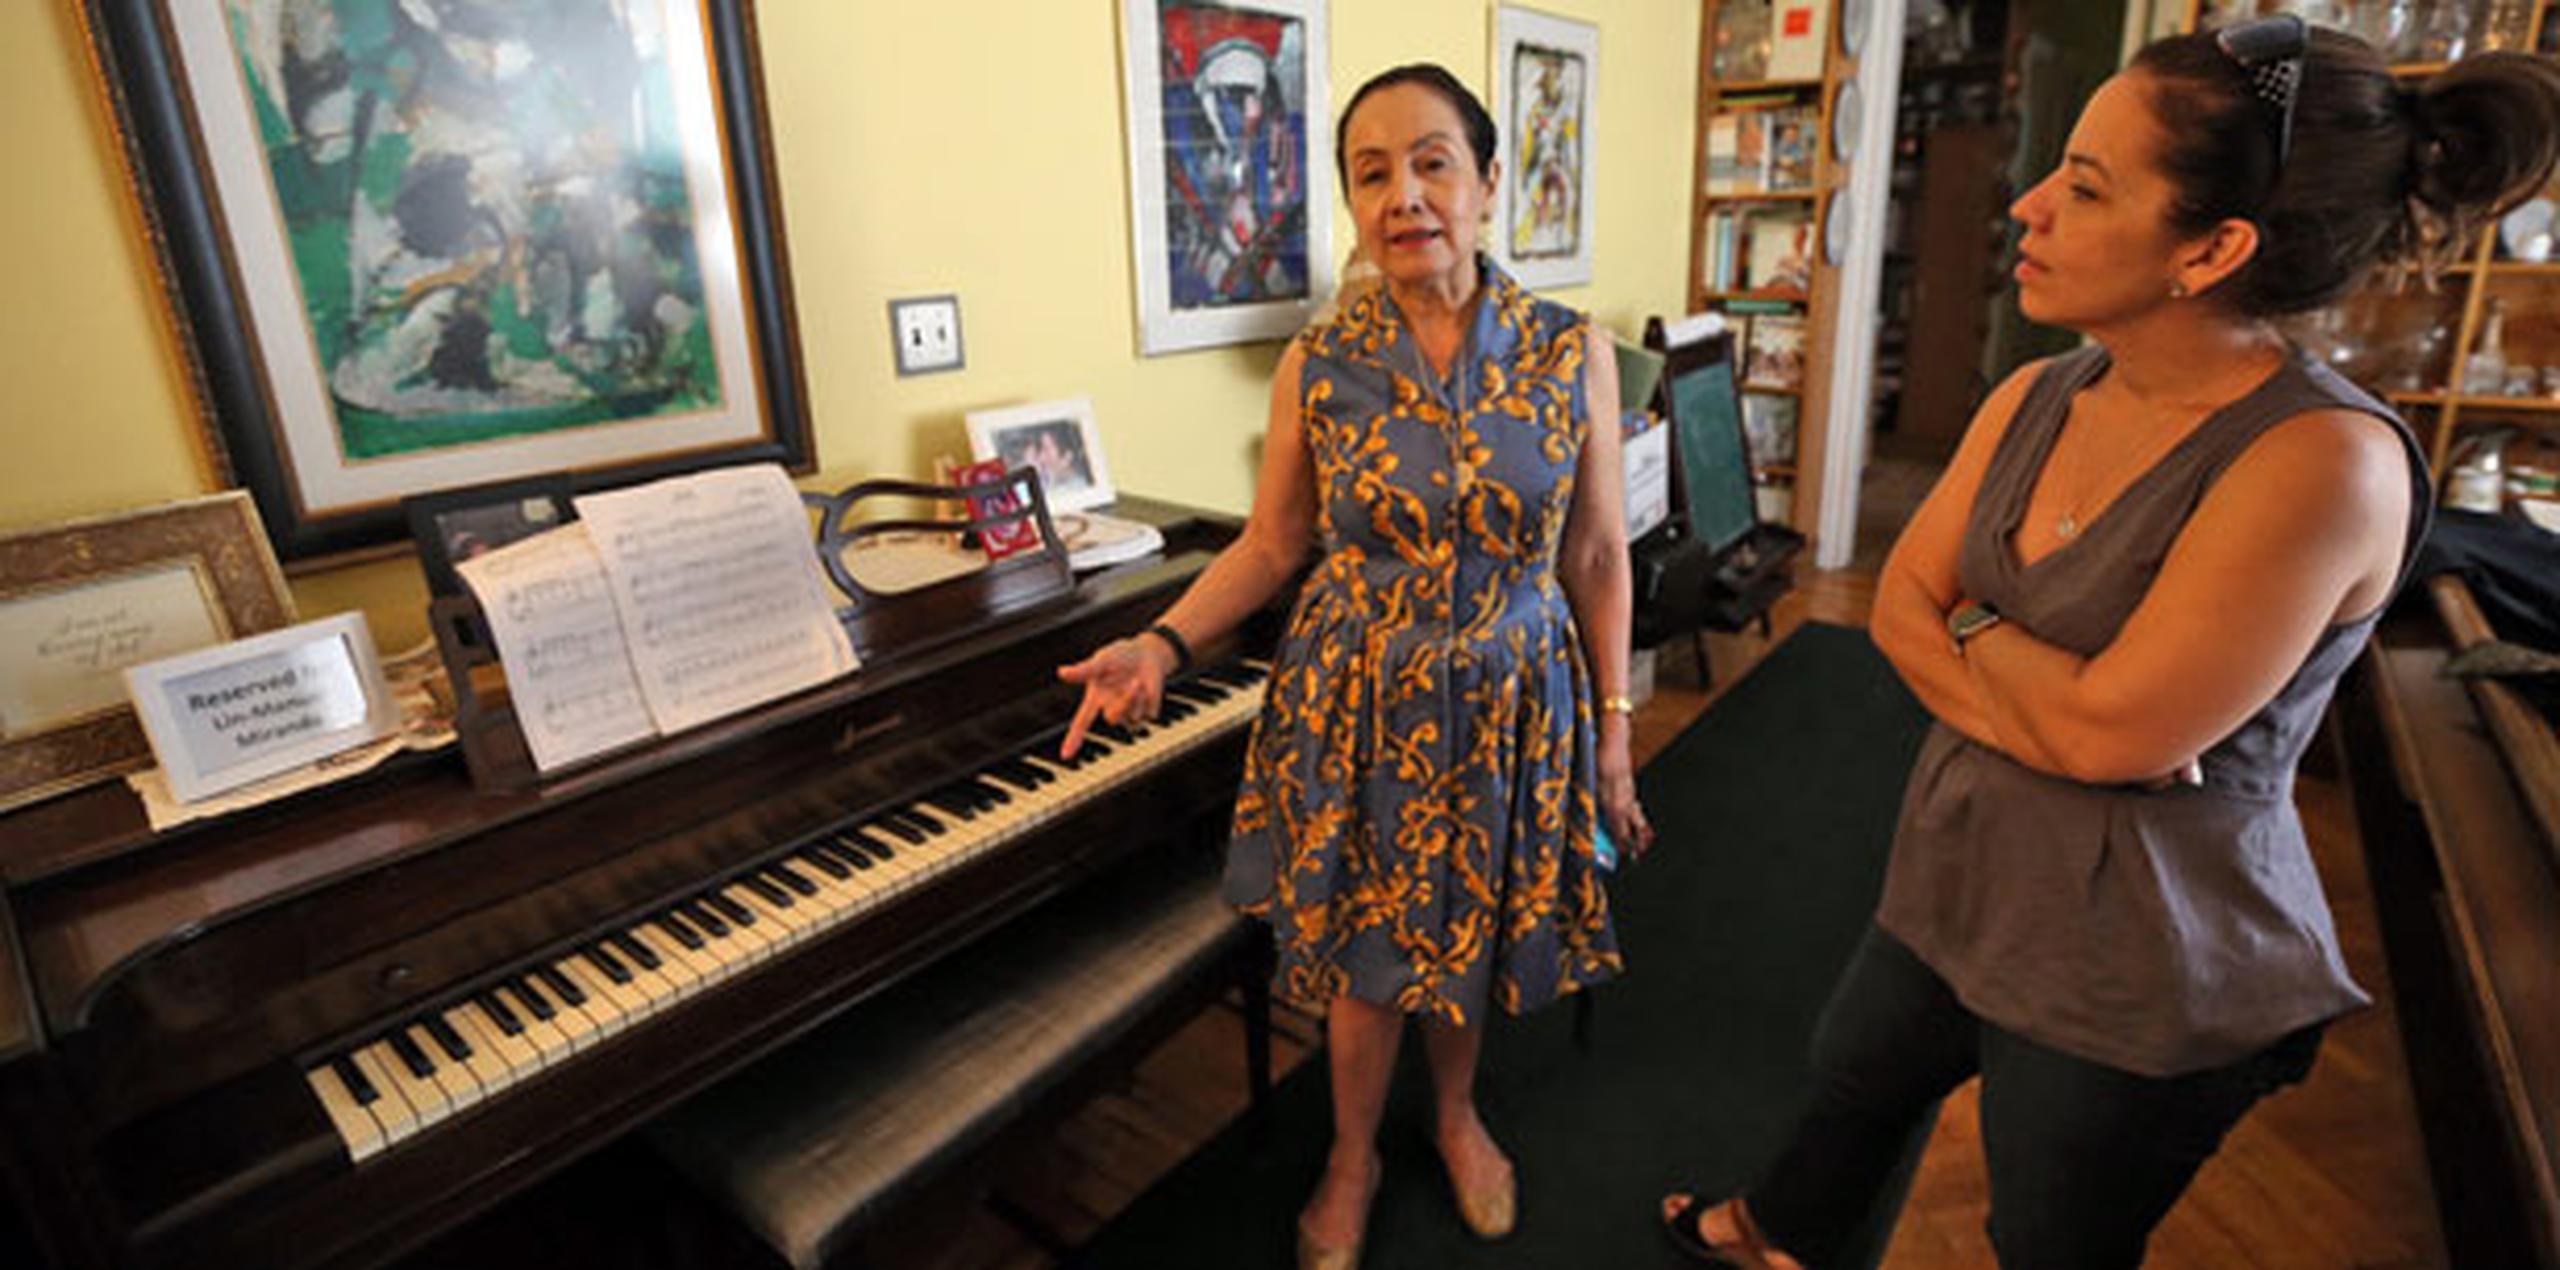 La madre y hermana del dramaturgo muestran el piano en el que Lin Manuel comenzó a componer desde su infancia y en el que escribió mucha de la música de sus musicales. (juan.martinez@gfrmedia.com)